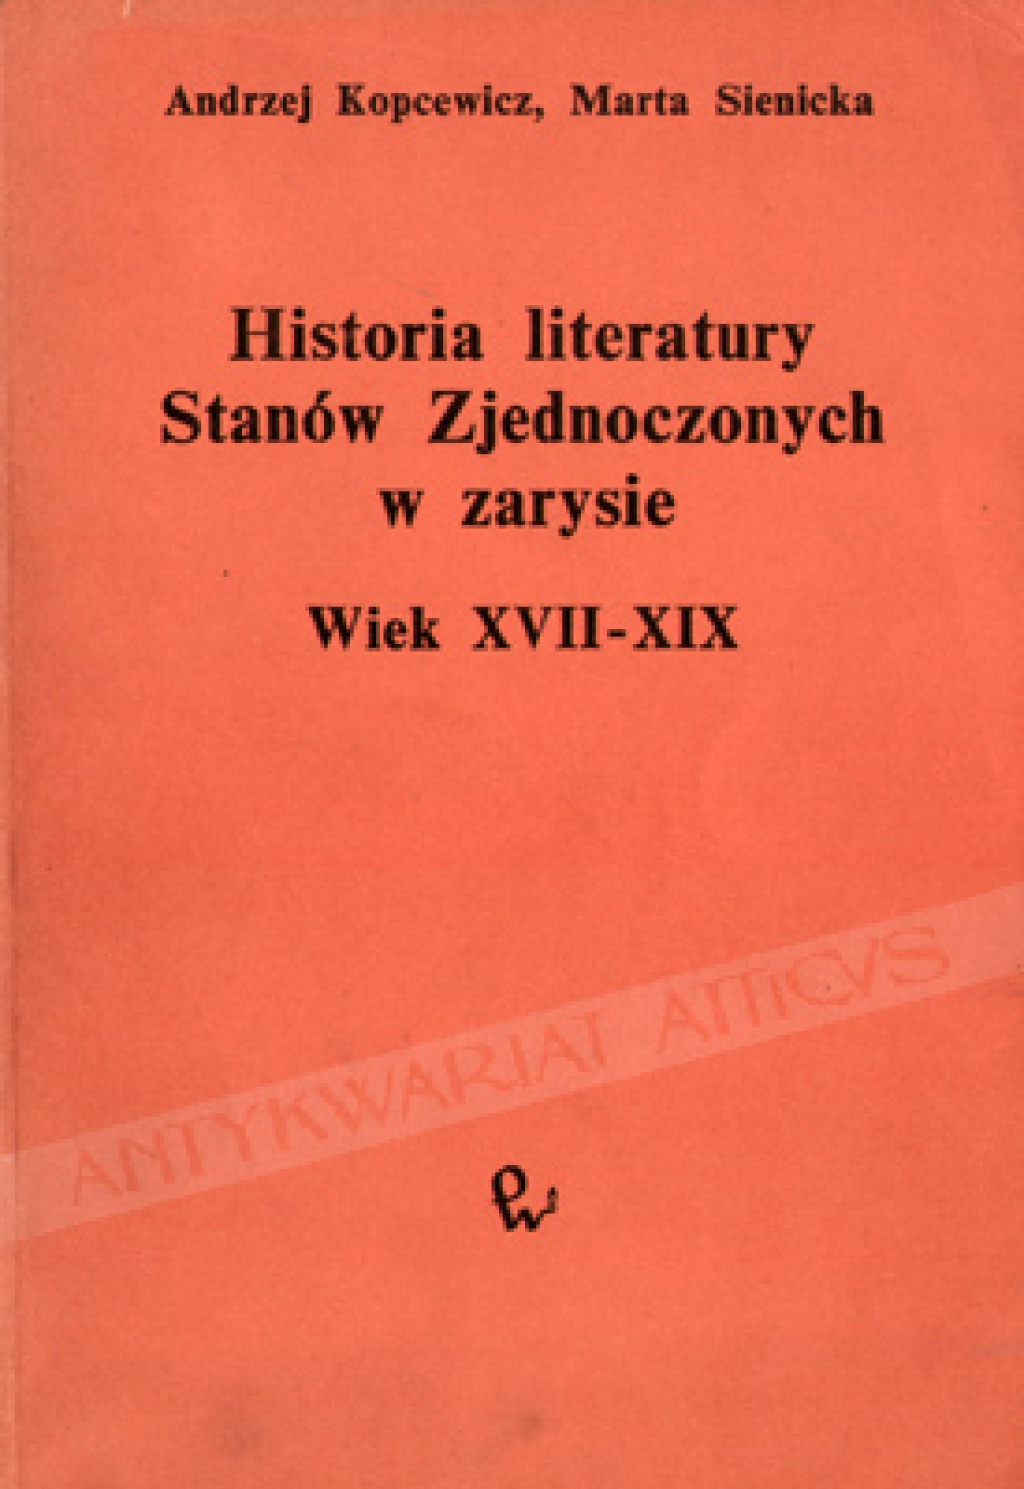 Historia literatury Stanów Zjednoczonych w zarysie. Wiek XVII-XIX